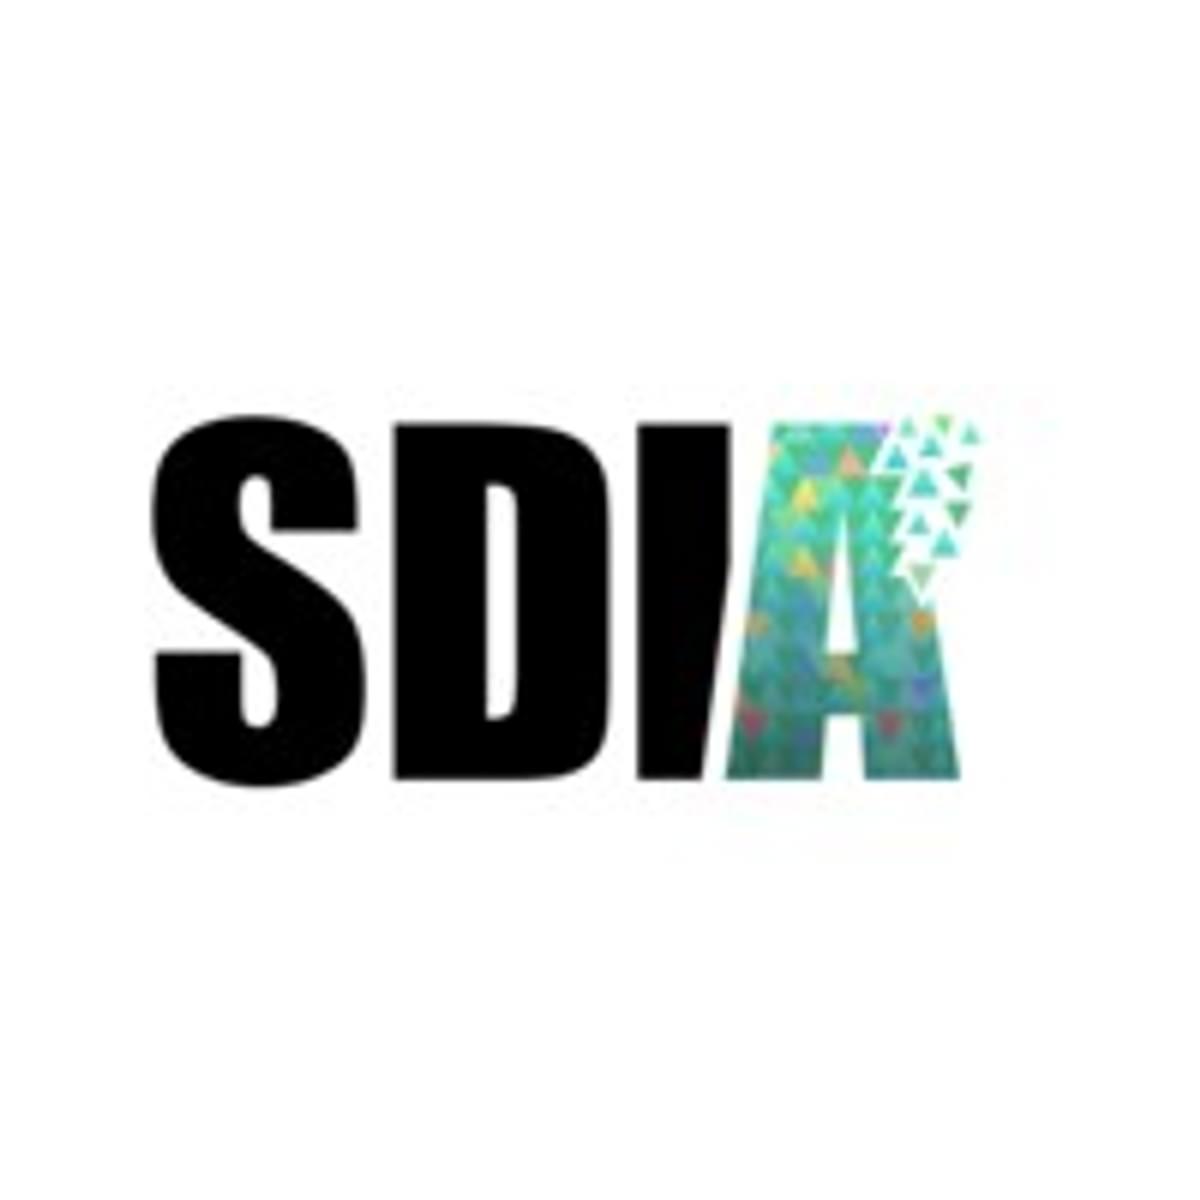 SDIA stelt Daan Terpstra aan als nieuwe CEO image